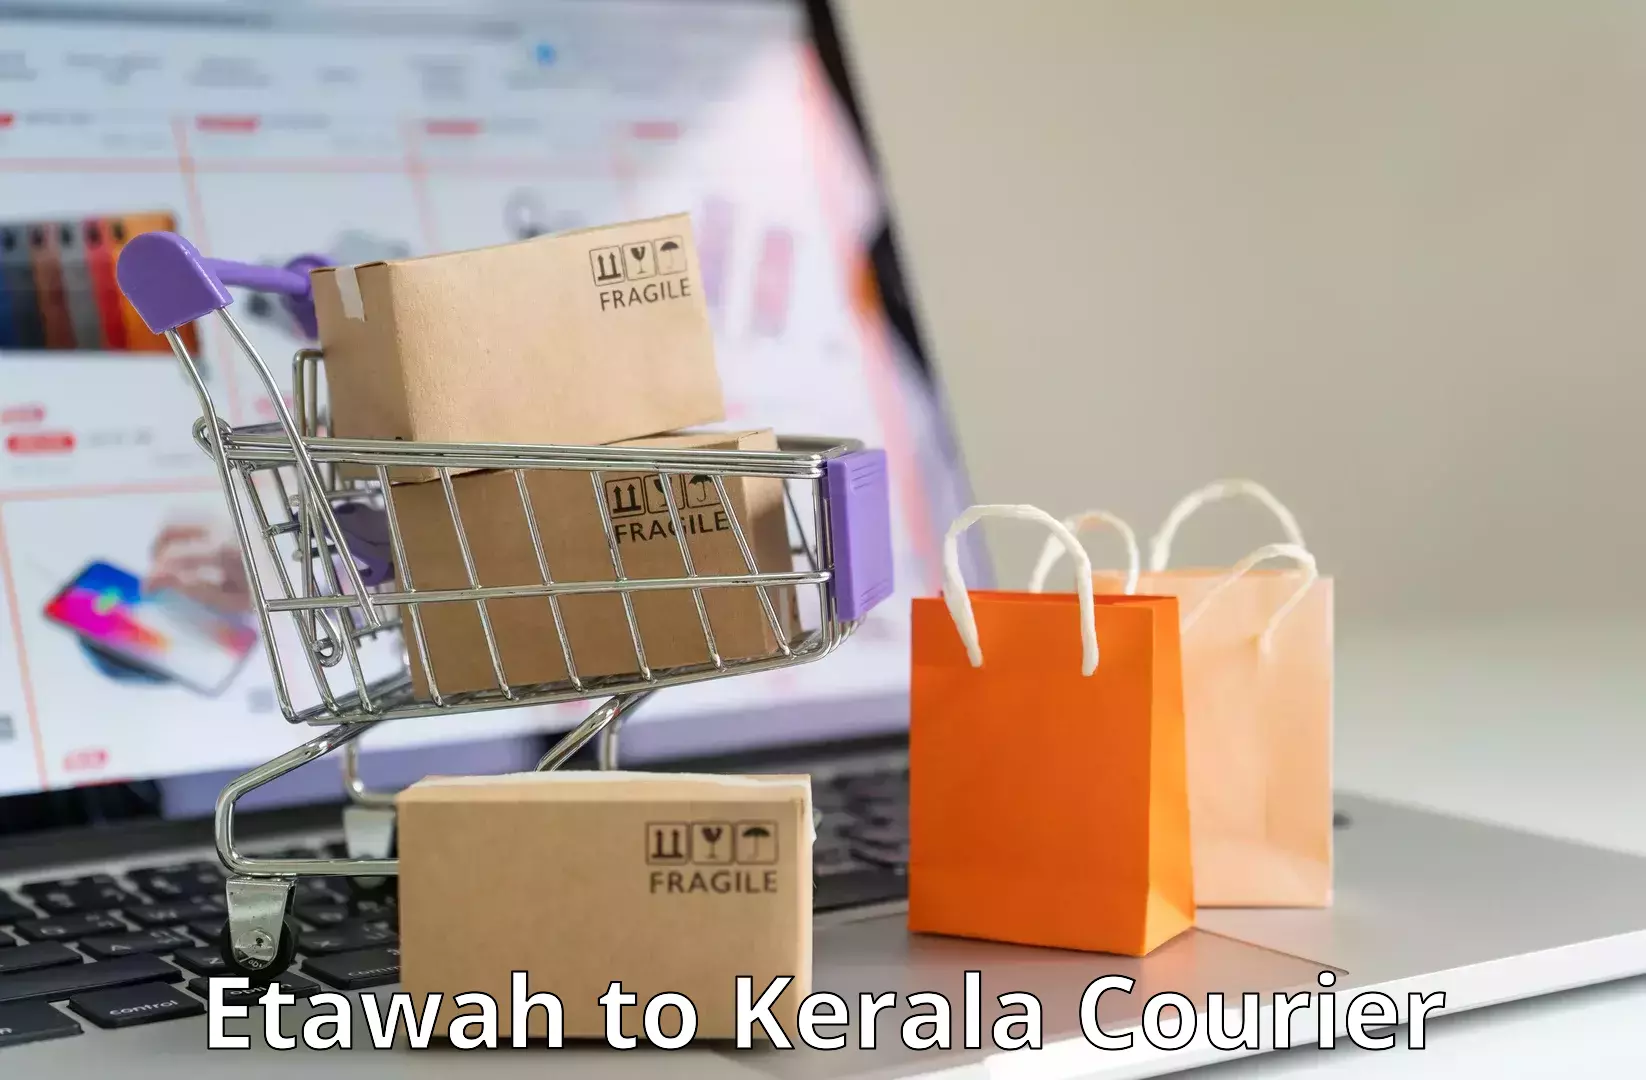 Scalable shipping solutions Etawah to Cochin Port Kochi